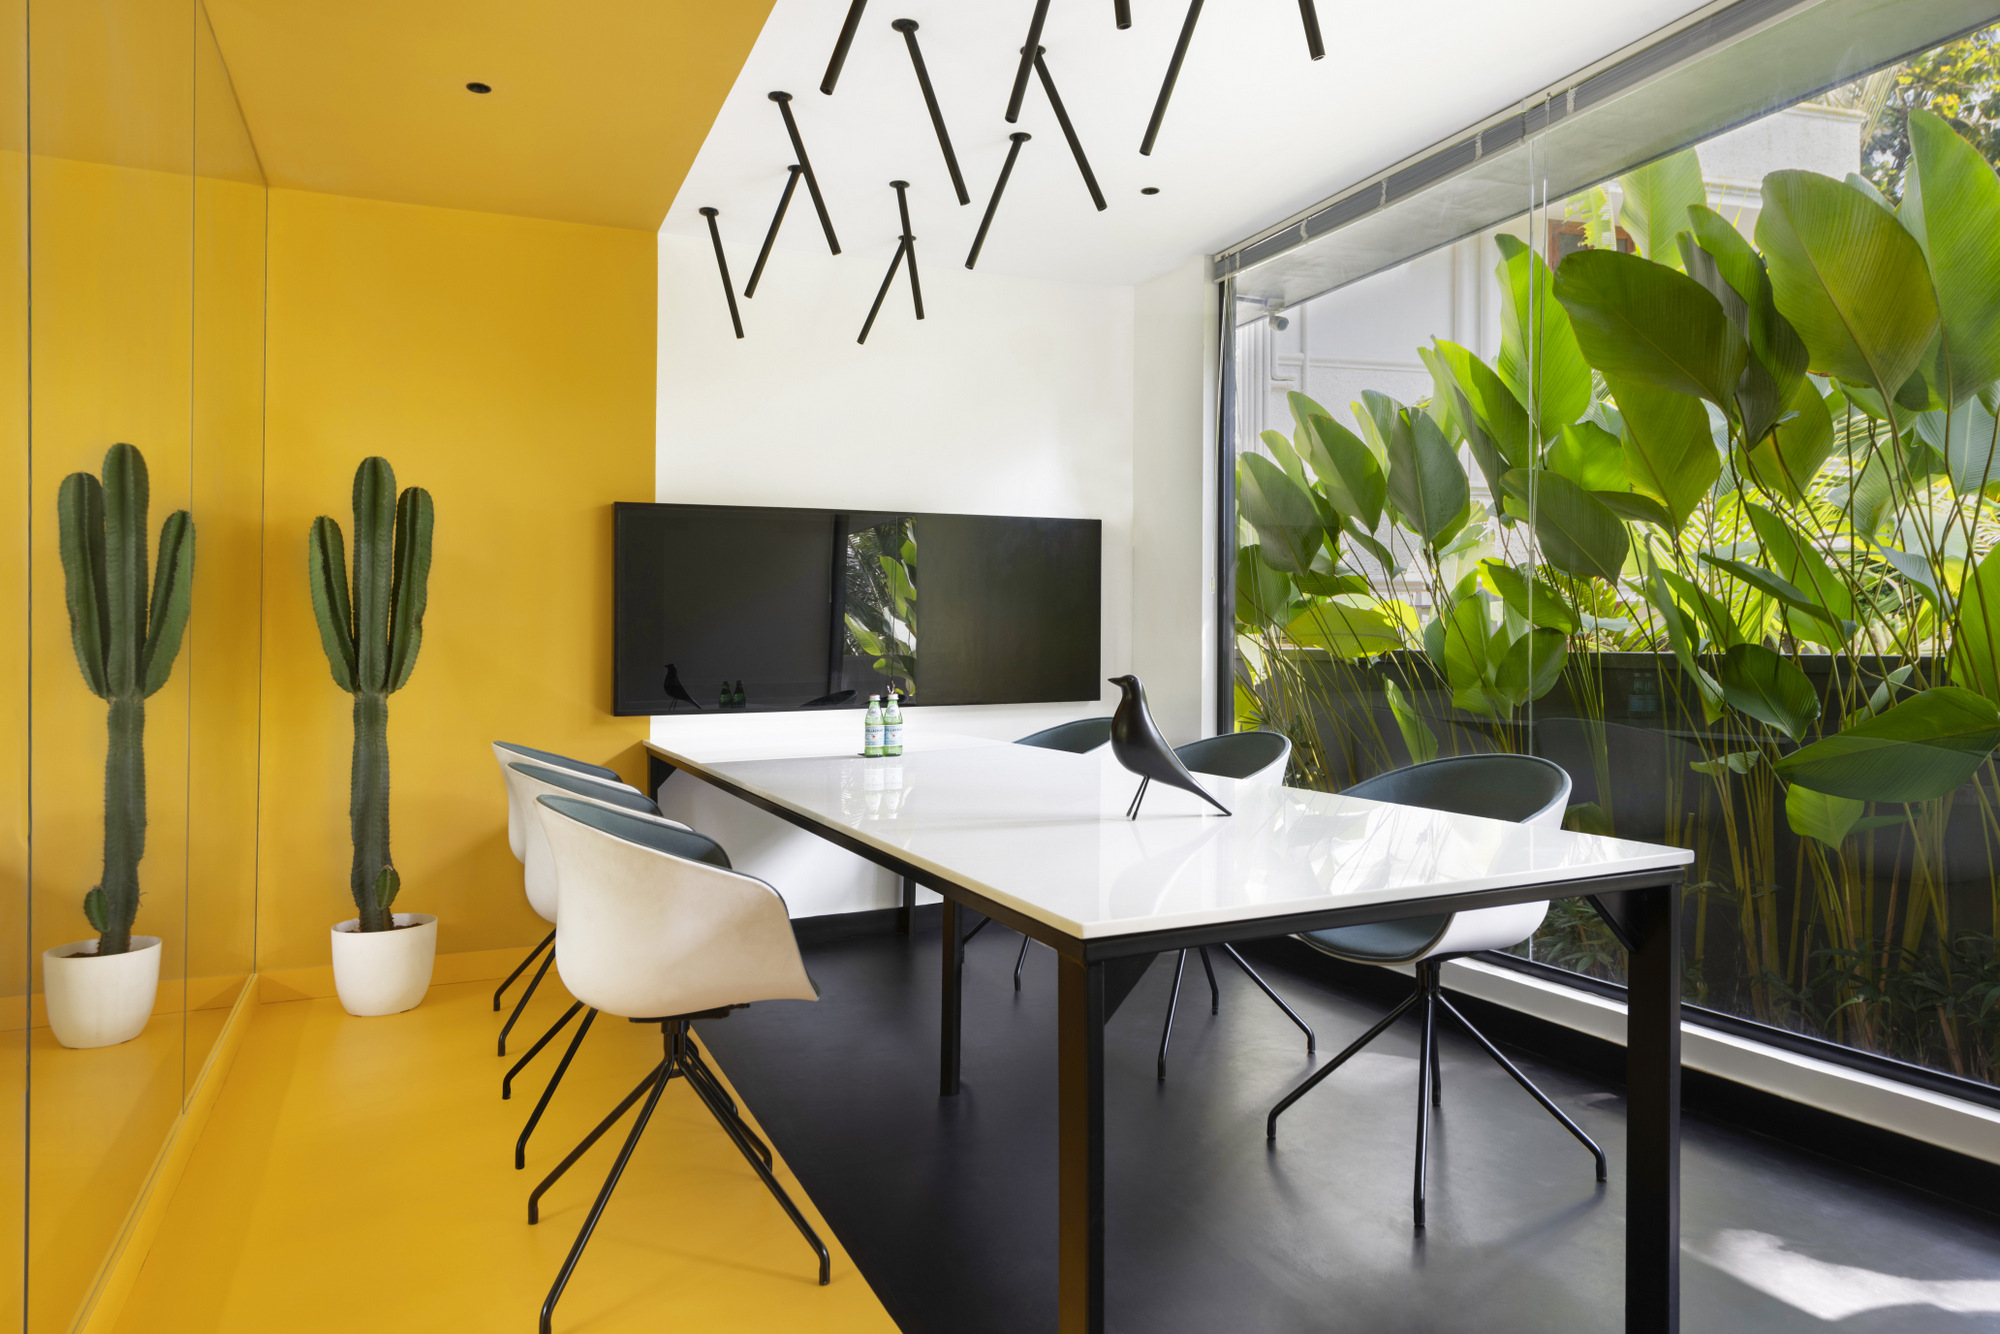 图片[4]|Limotex办公室——喀拉拉邦|ART-Arrakis | 建筑室内设计的创新与灵感